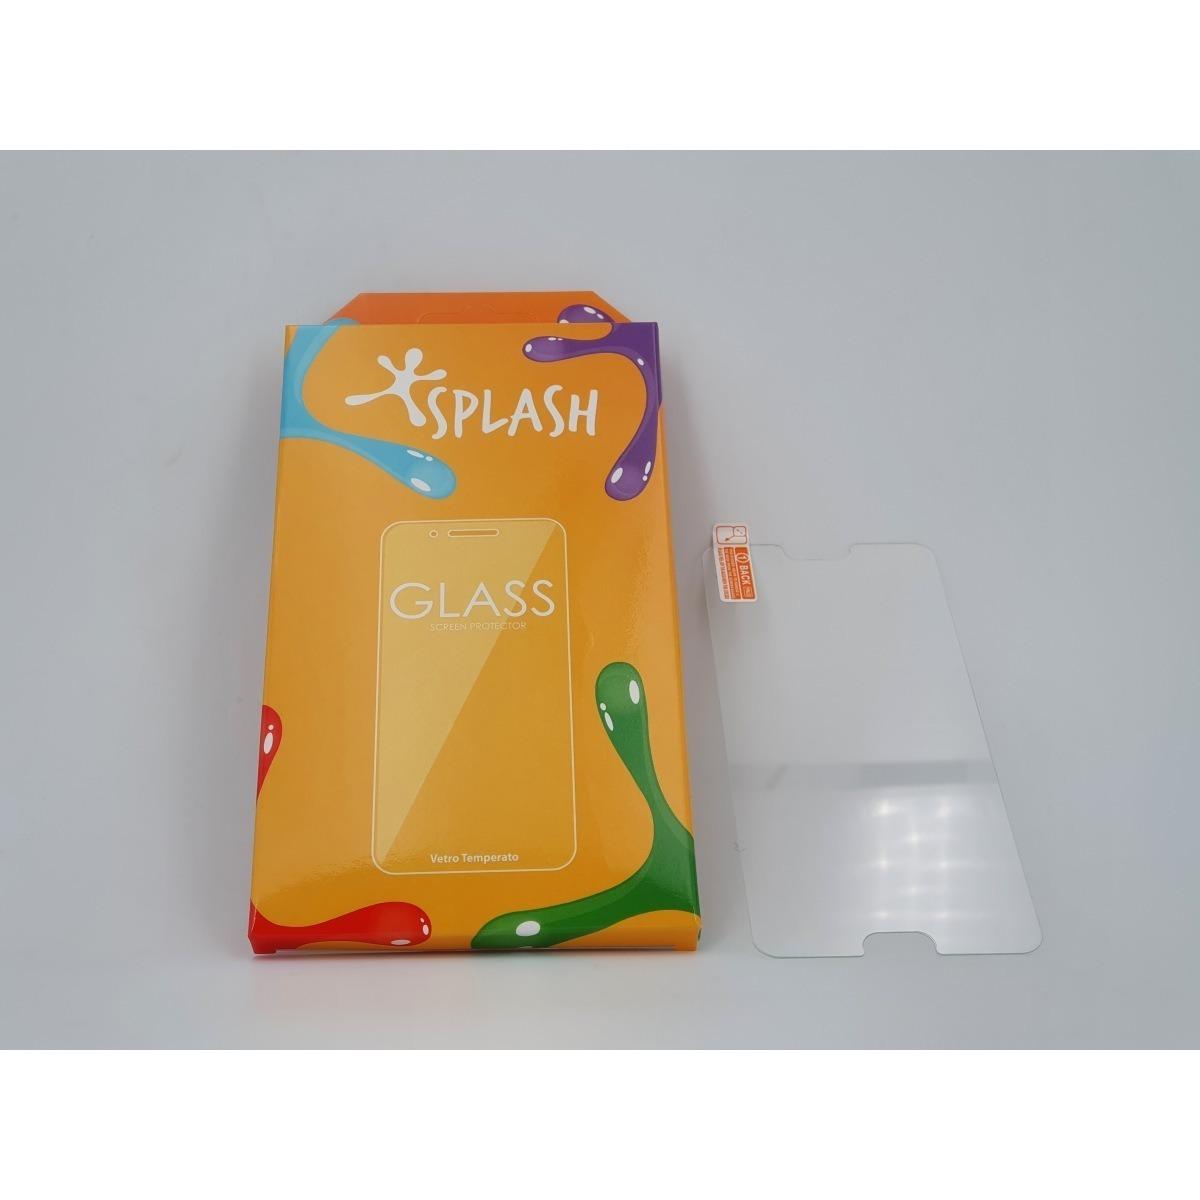 Splash pellicola in vetro per iphone6